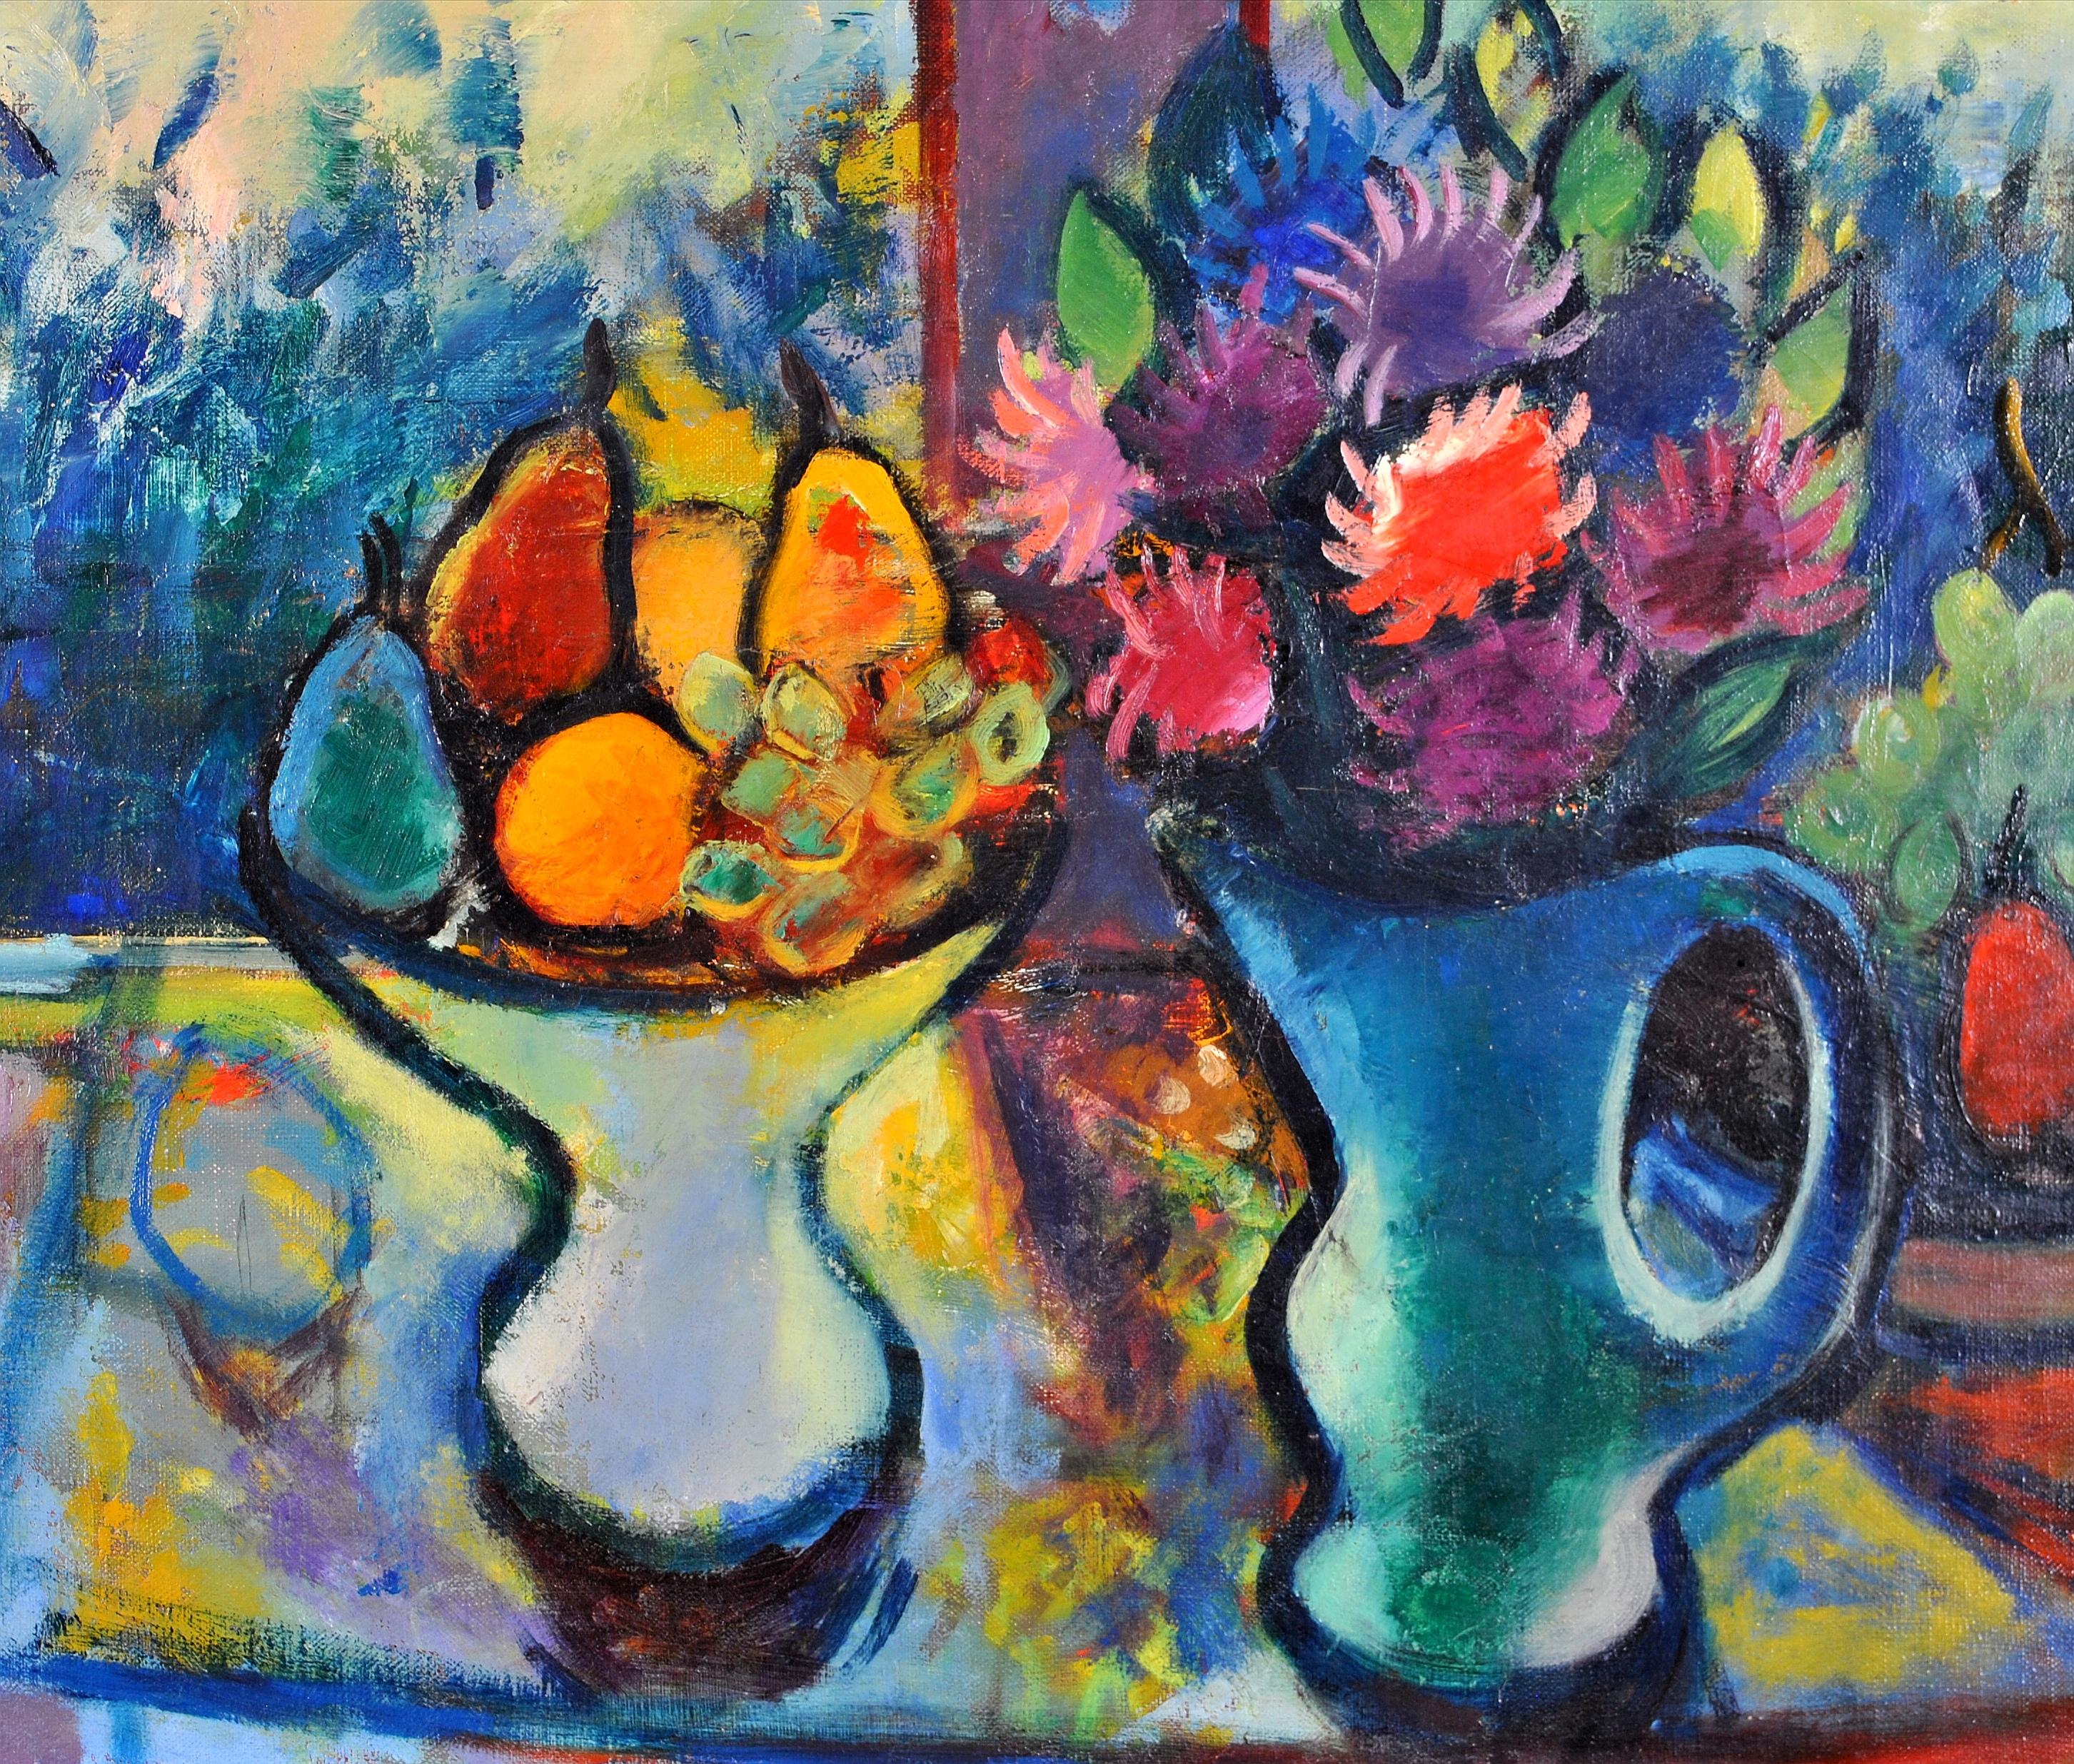 Fleurs et fruits dans une fenêtre - Grande nature morte expressionniste française - Expressionniste Painting par Philippe Marie René Picard 